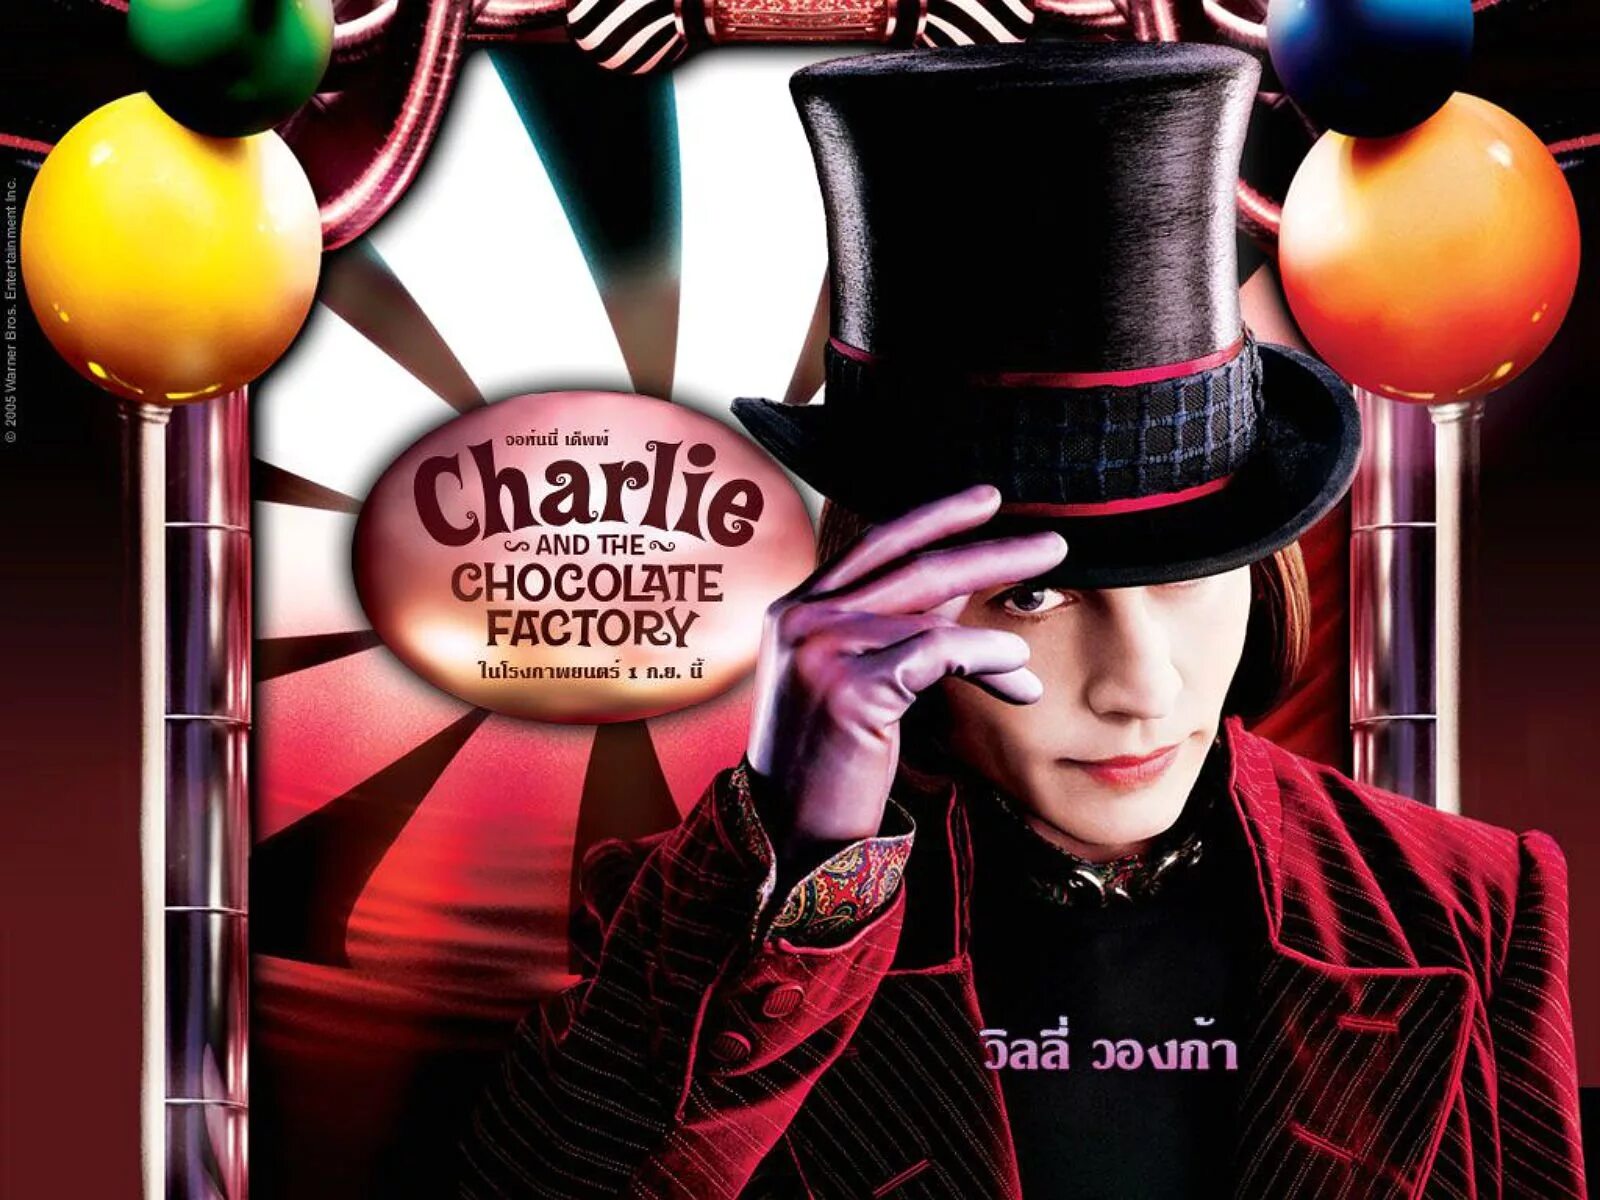 Музыка шоколадная фабрика. Джонни Депп Чарли и шоколадная фабрика. Чарли и шоколадная фабрика / Charlie and the Chocolate Factory (2005).